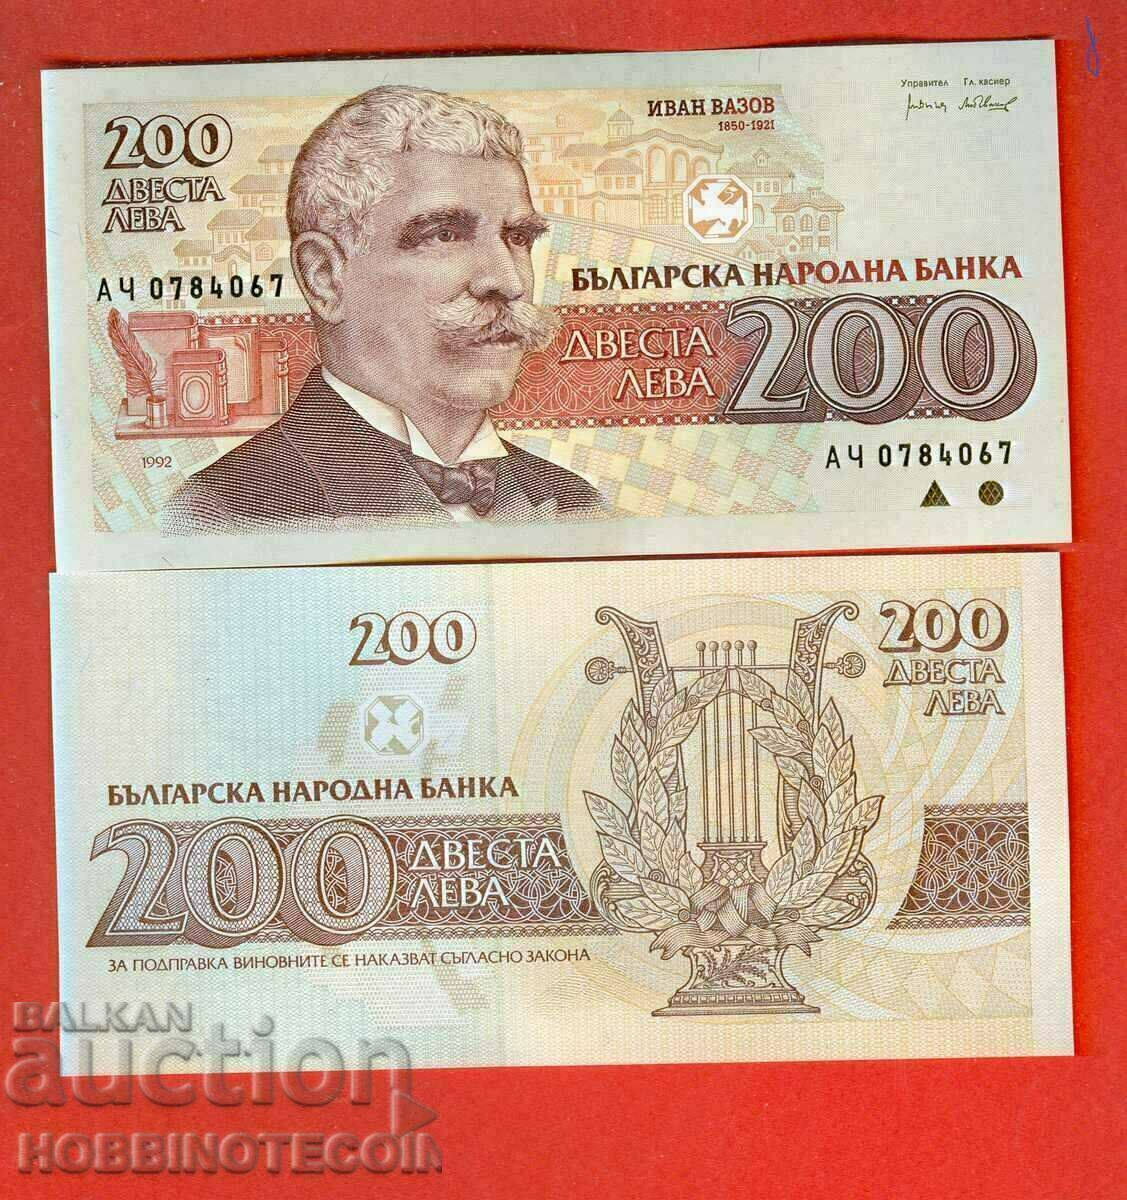 BULGARIA BULGARIA 200 Numărul stânga 1992 - NOU UNC